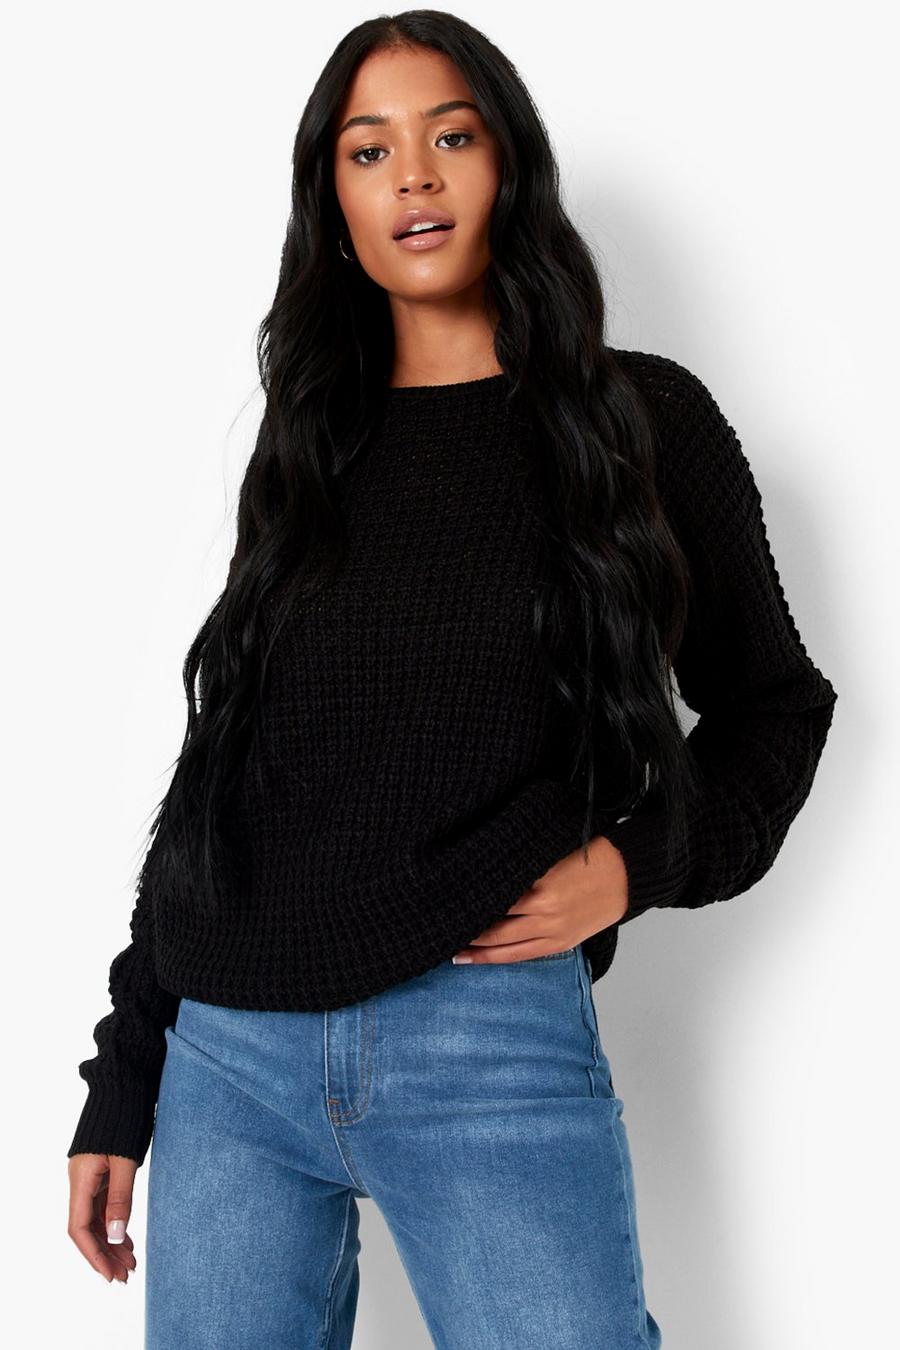 שחור סוודר מבד ממוחזר בסריגת וופל לנשים גבוהות